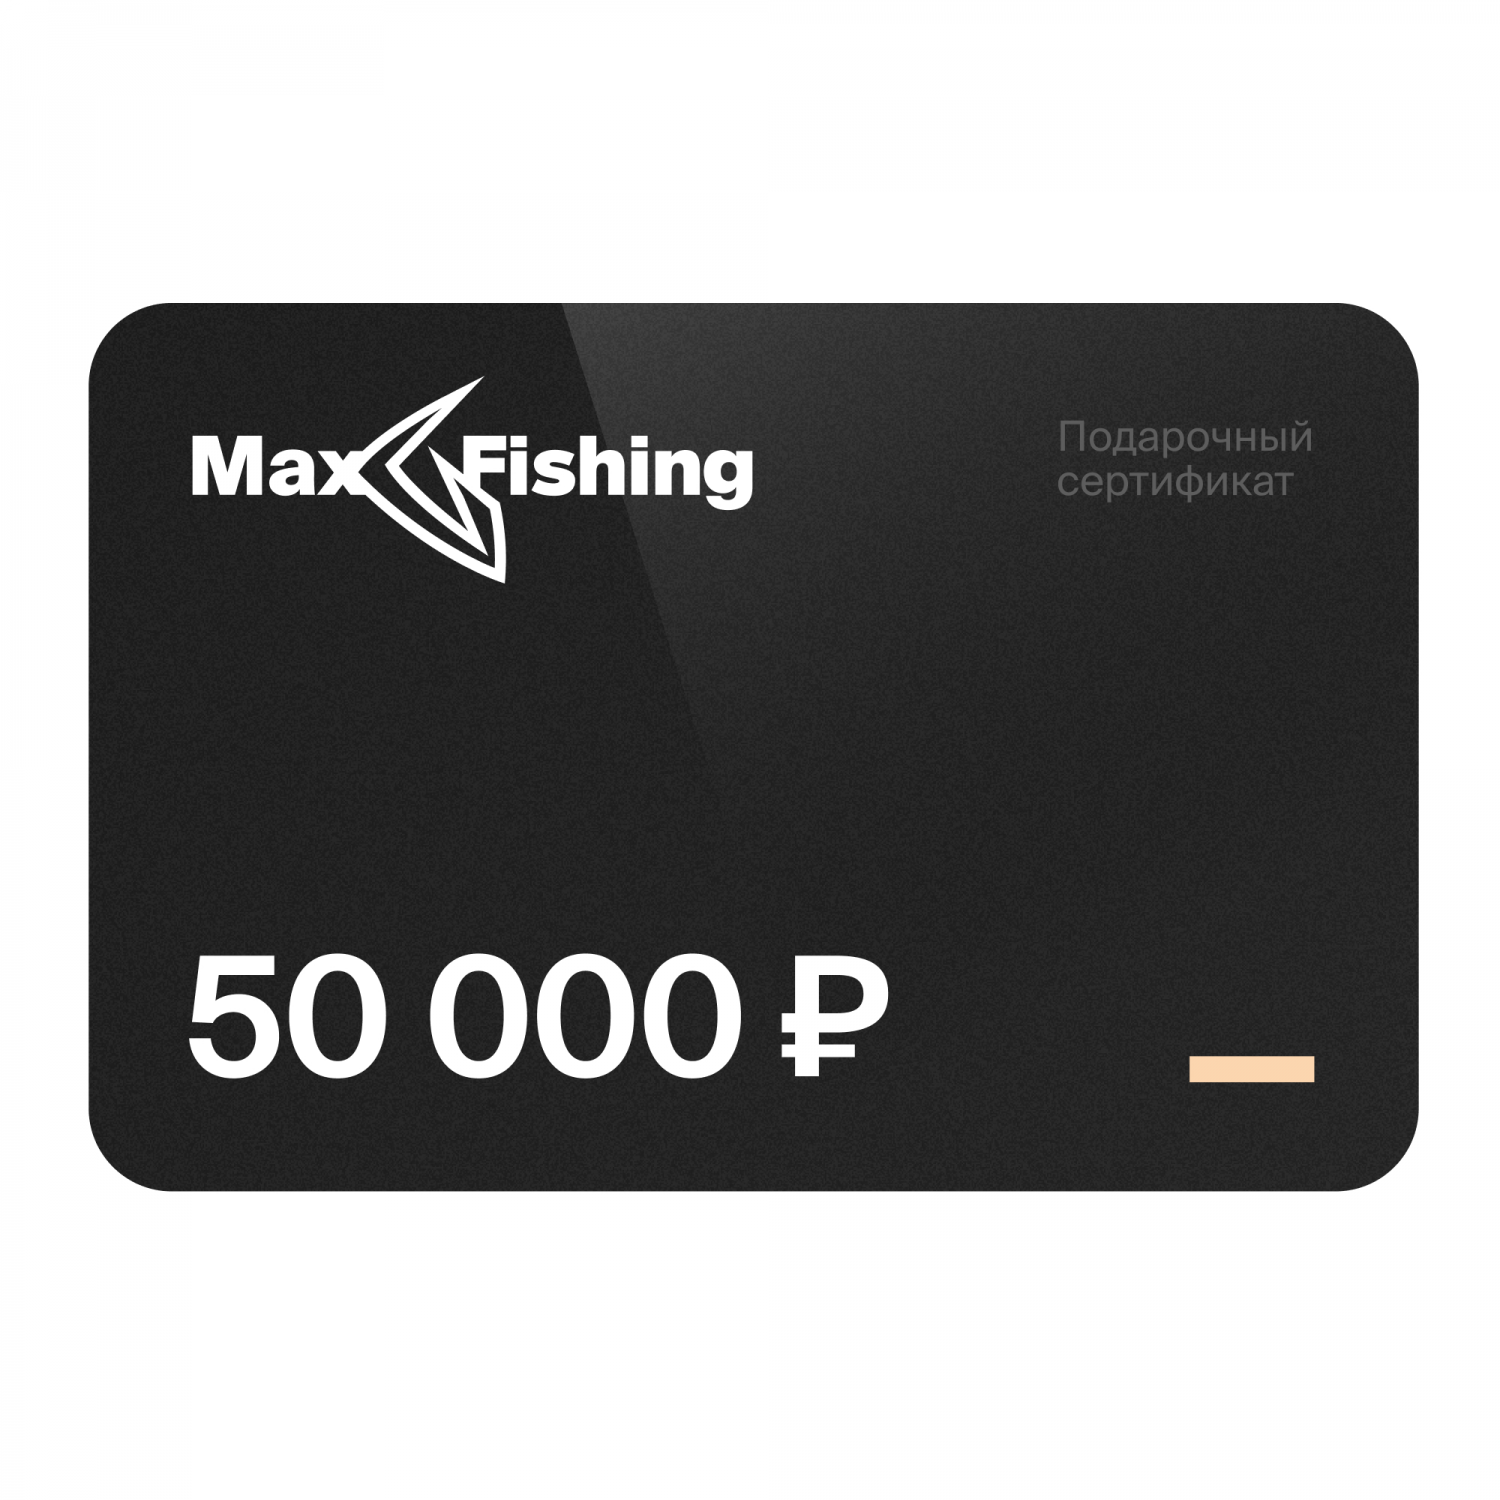 Подарочный сертификат MaxFishing 50 000 ₽ подарочный сертификат maxfishing 25